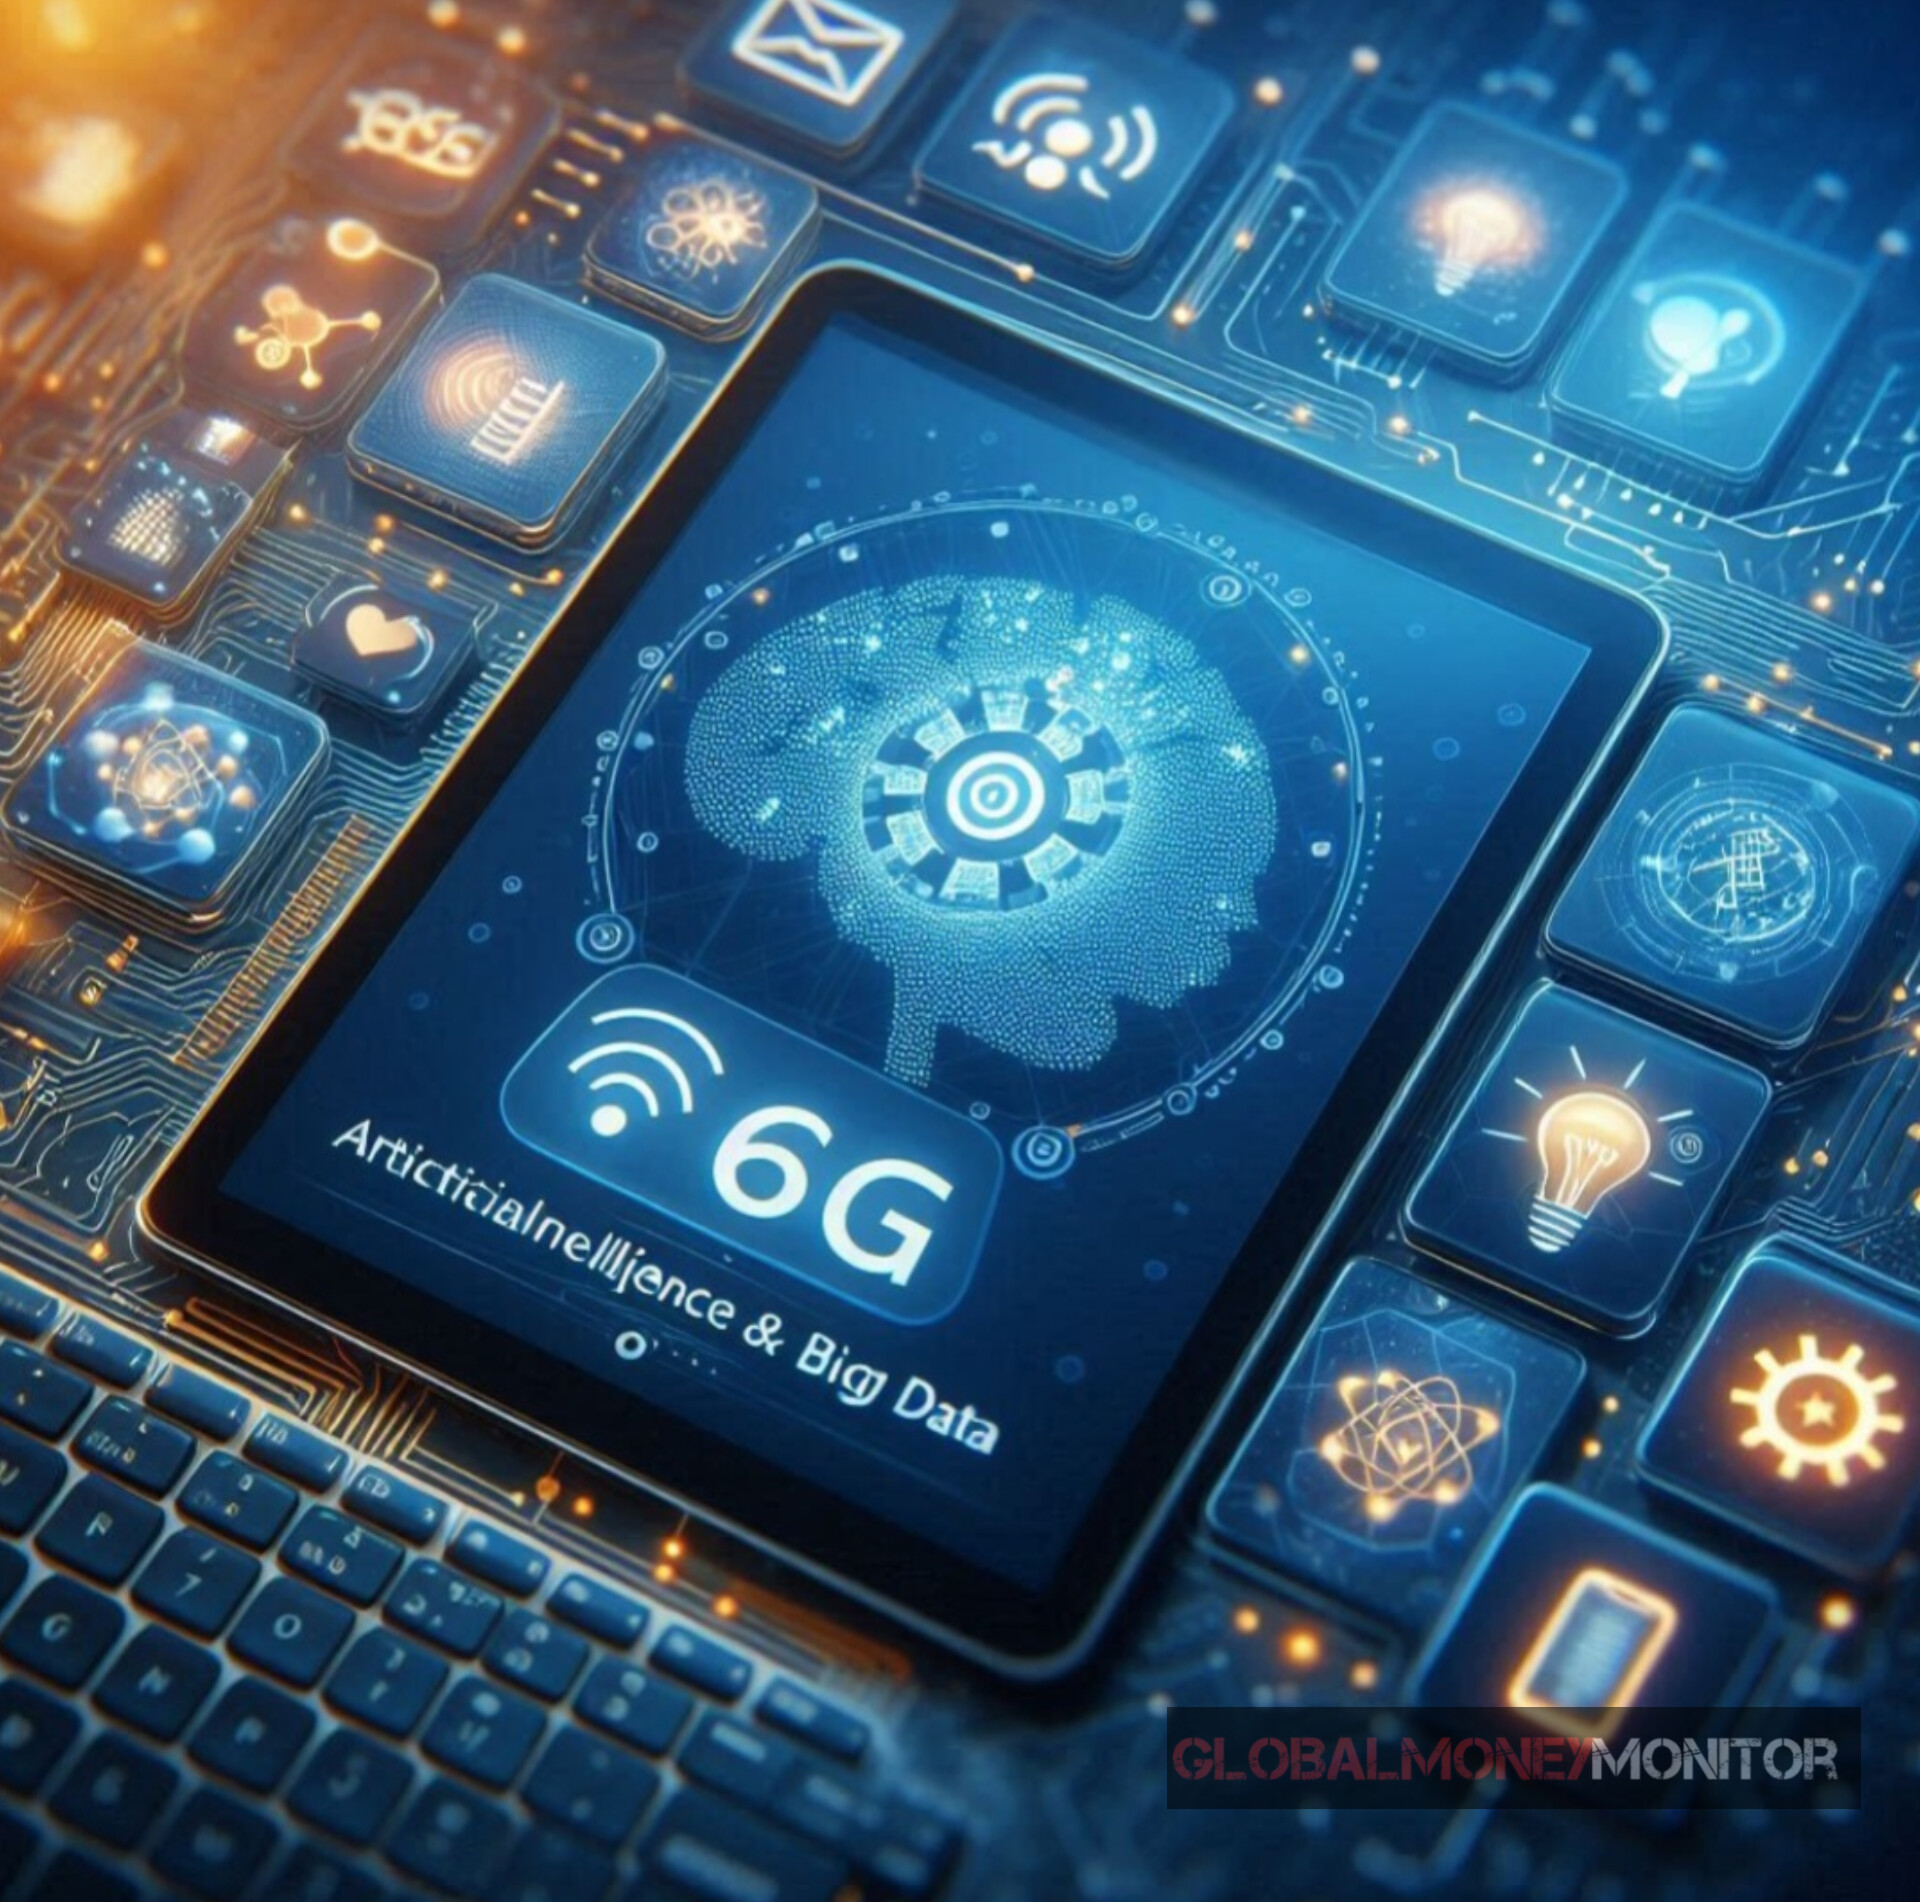 Tecnologia de Ponta: Filtro Ajustável Desbloqueia o Potencial do 6G sem Interferências